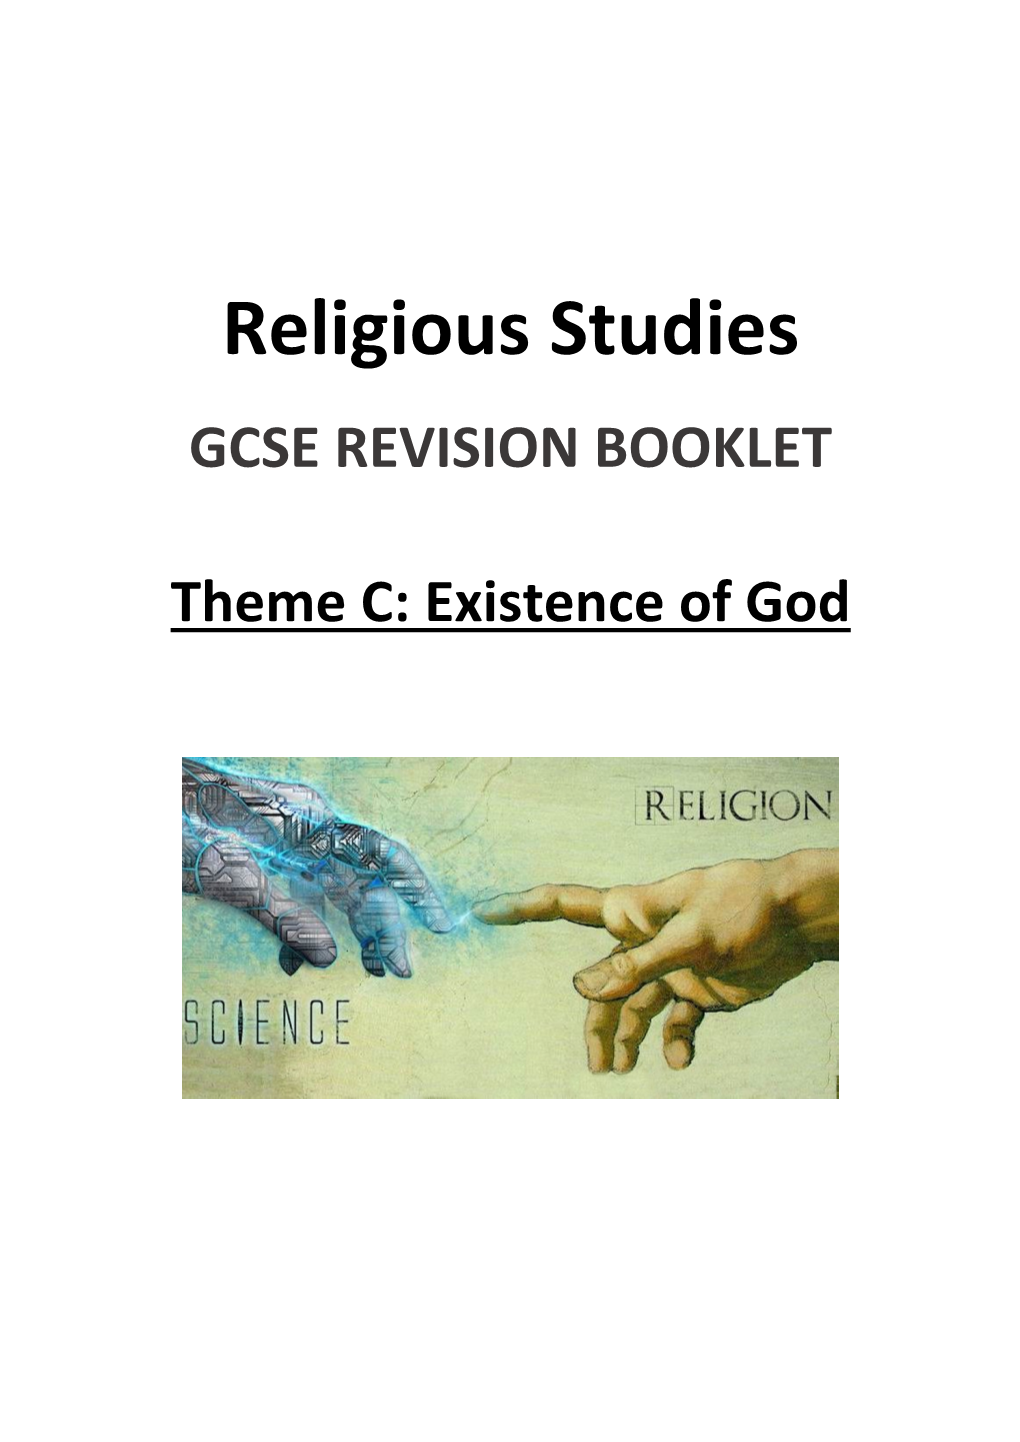 Religious Studies GCSE REVISION BOOKLET